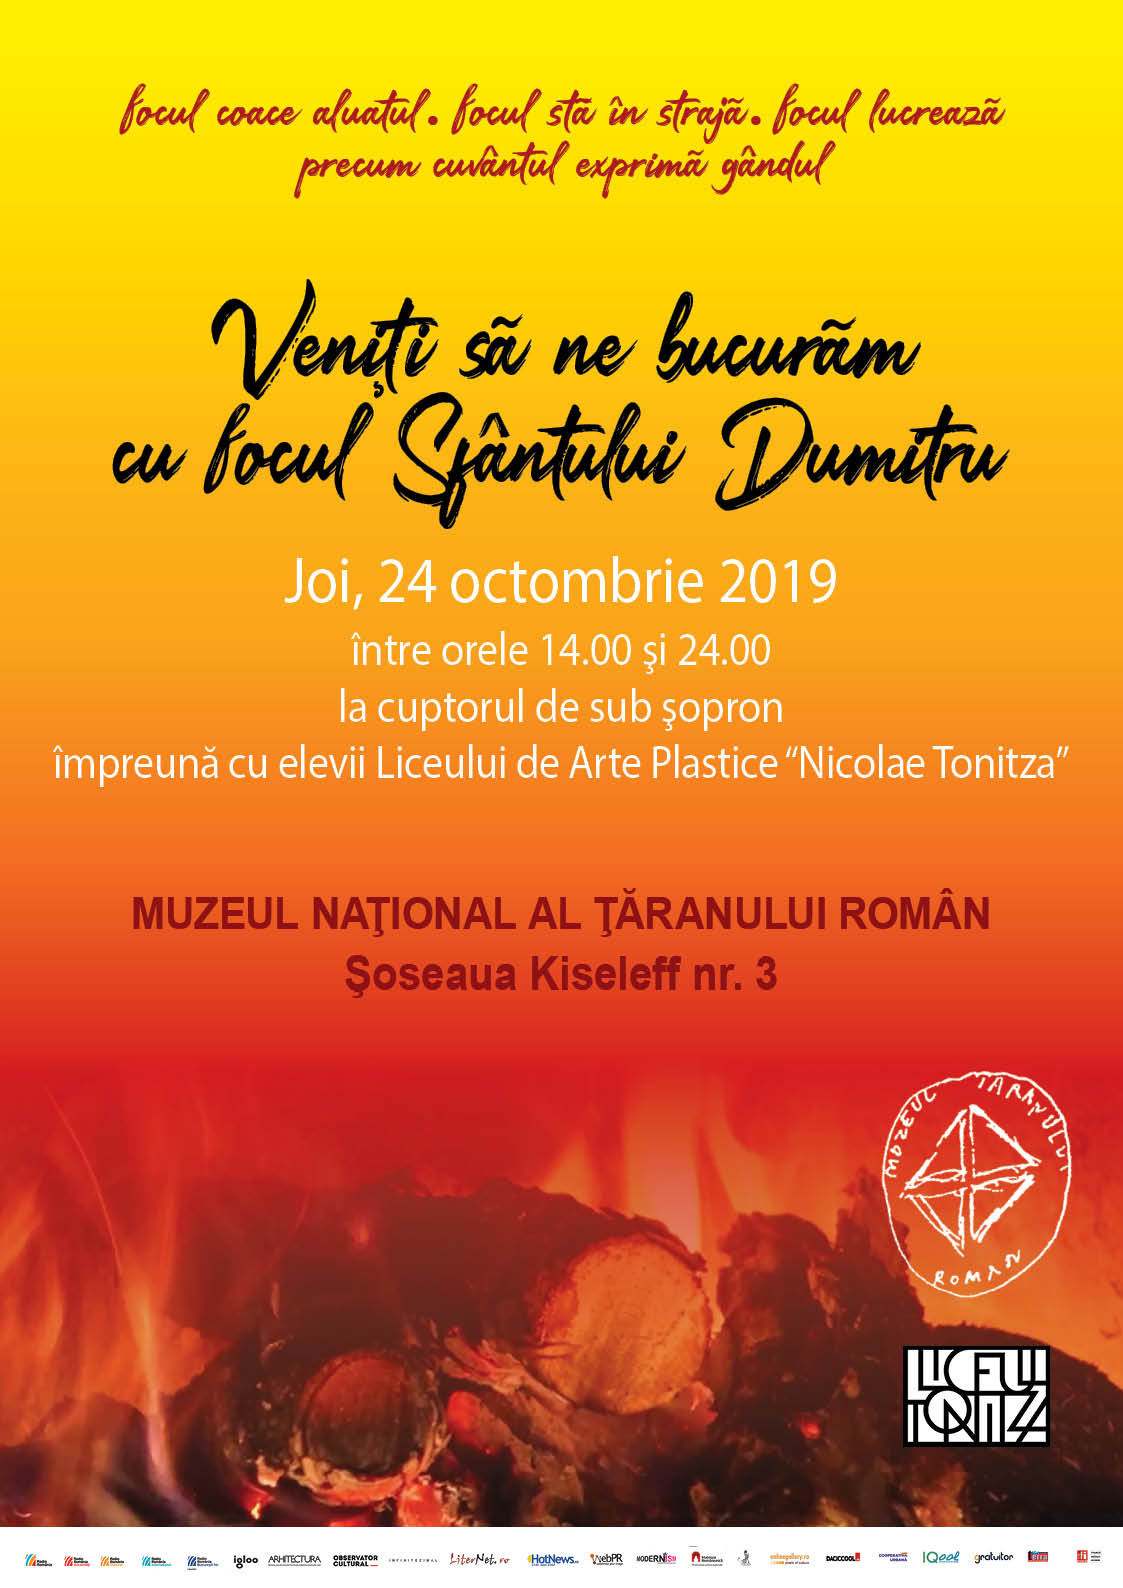 Muzeul Național al Țăranului Român,Focurile de Sf. Dumitru afiș